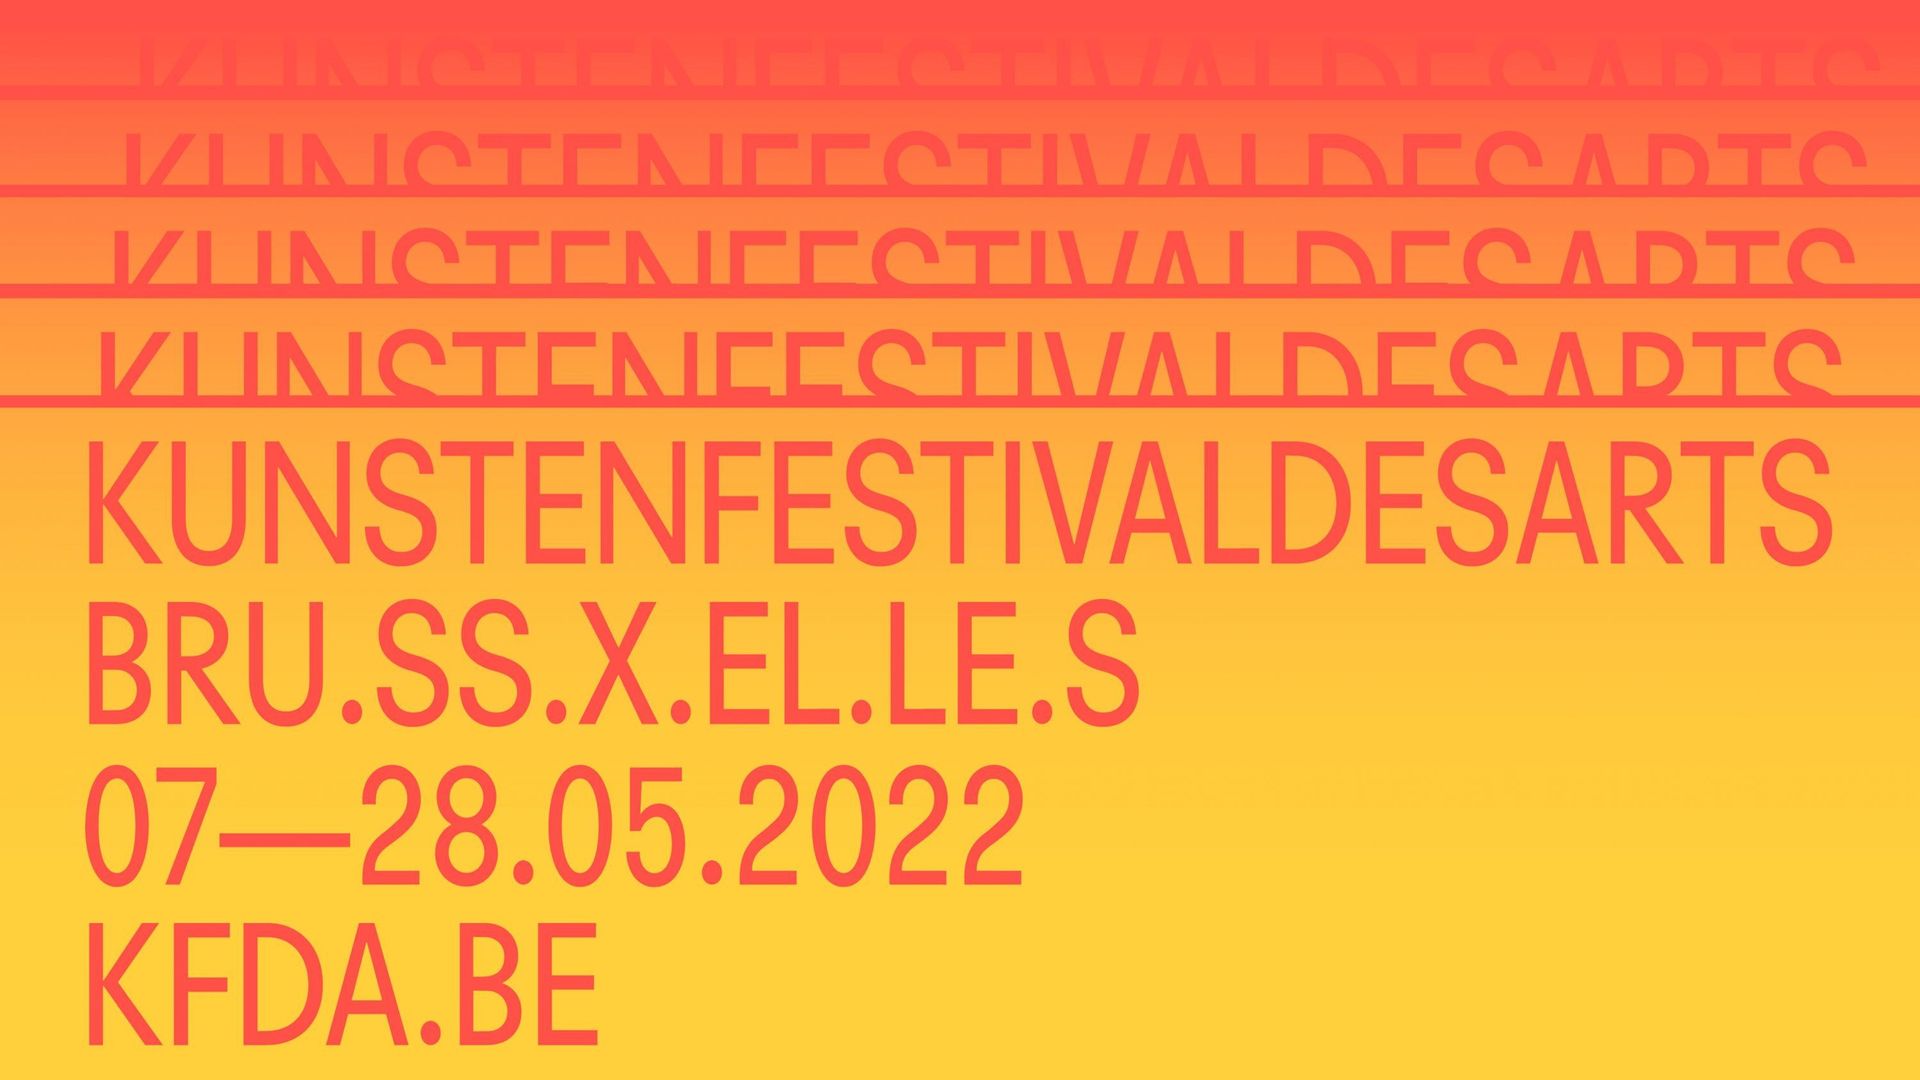 Du 7 au 28 mai 2022, le Kunstenfestivaldesarts se tient à Bruxelles.